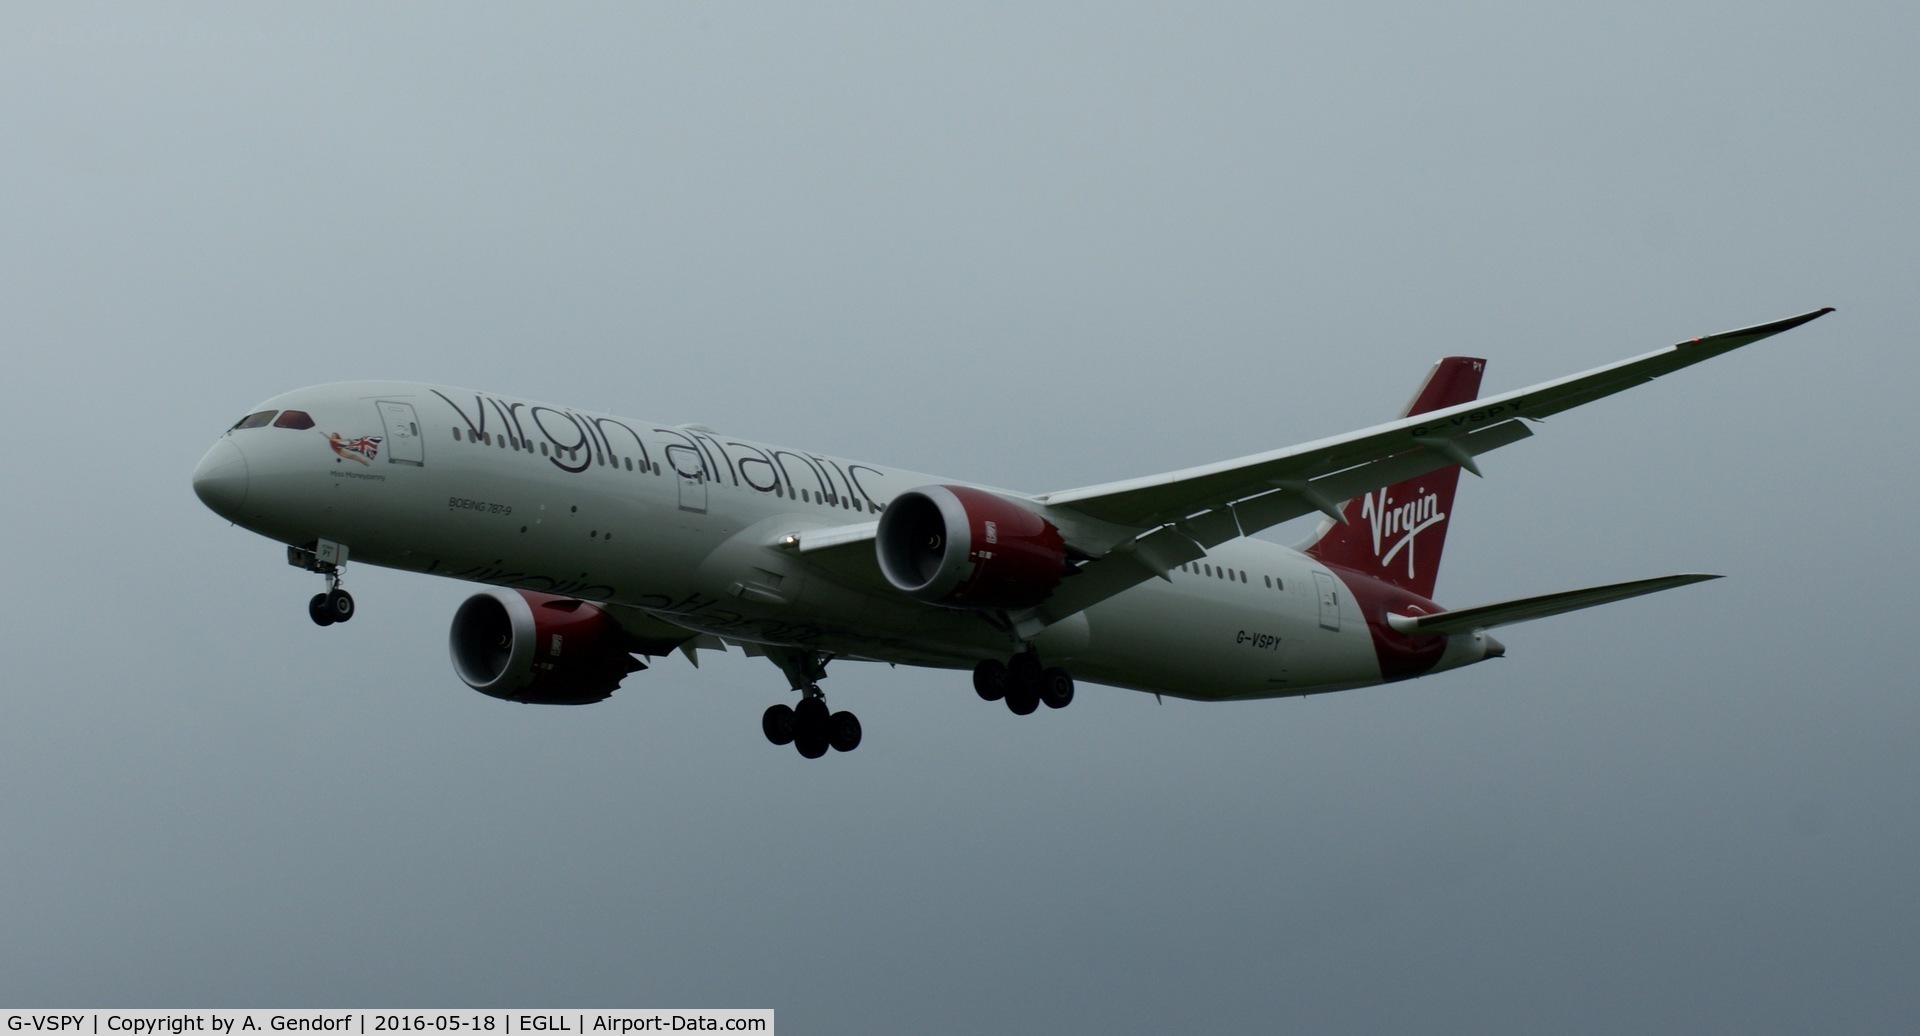 G-VSPY, 2015 Boeing 787-9 Dreamliner Dreamliner C/N 37973, Virgin Atlantic, is here approaching London Heathrow(EGLL)